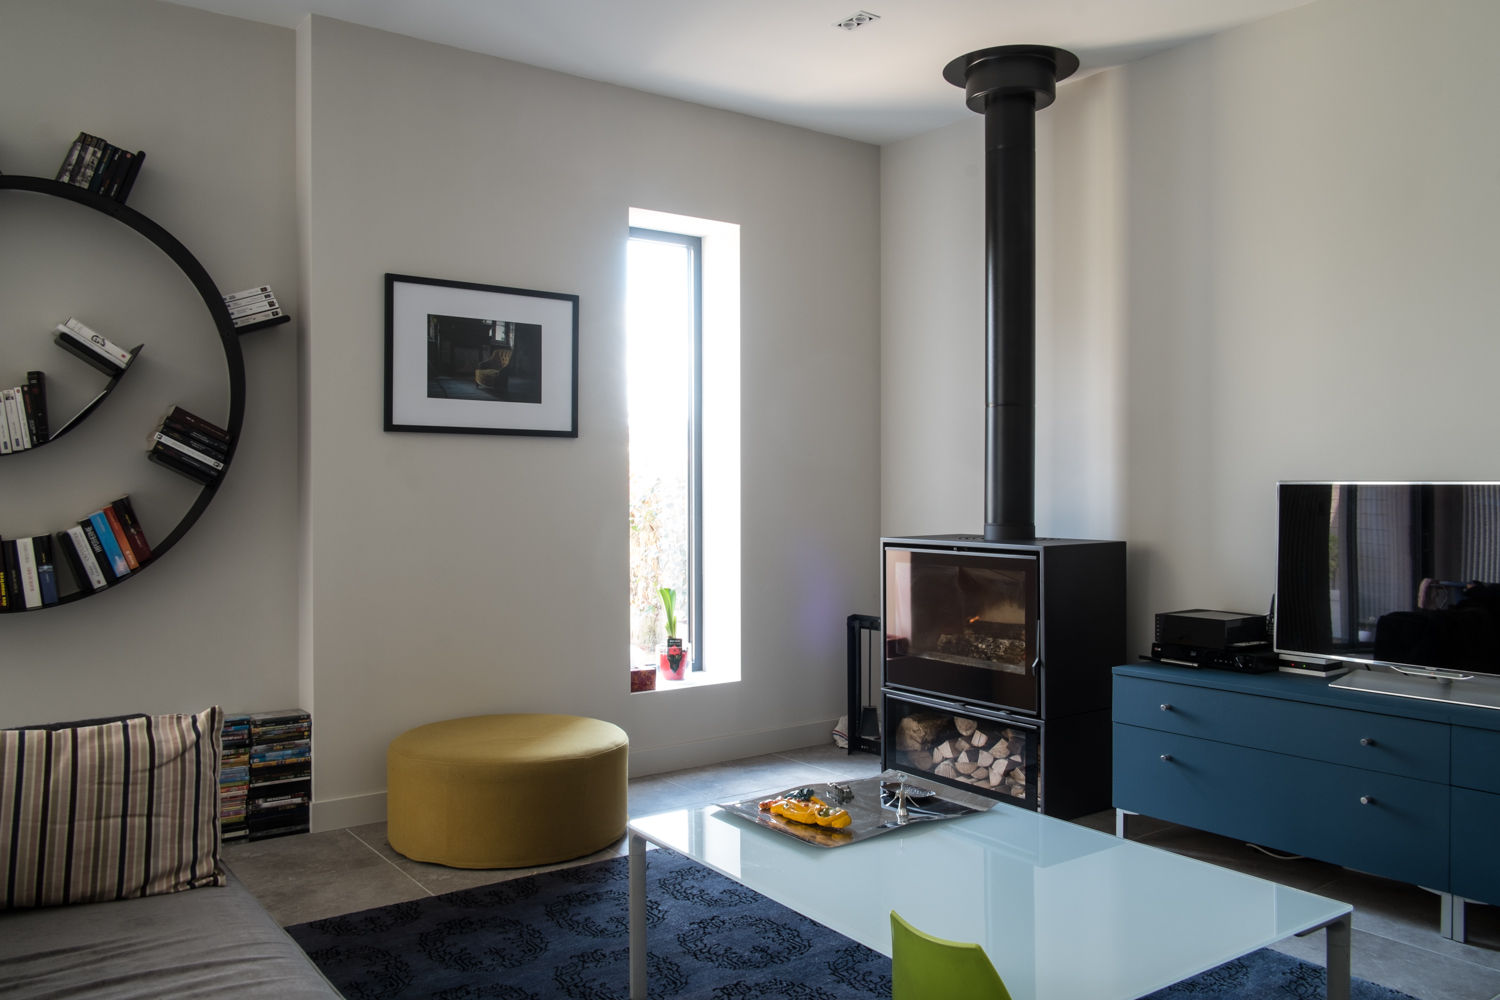 Maison à Limoges 2016, Jean-Paul Magy architecte d'intérieur Jean-Paul Magy architecte d'intérieur Salas de estar modernas